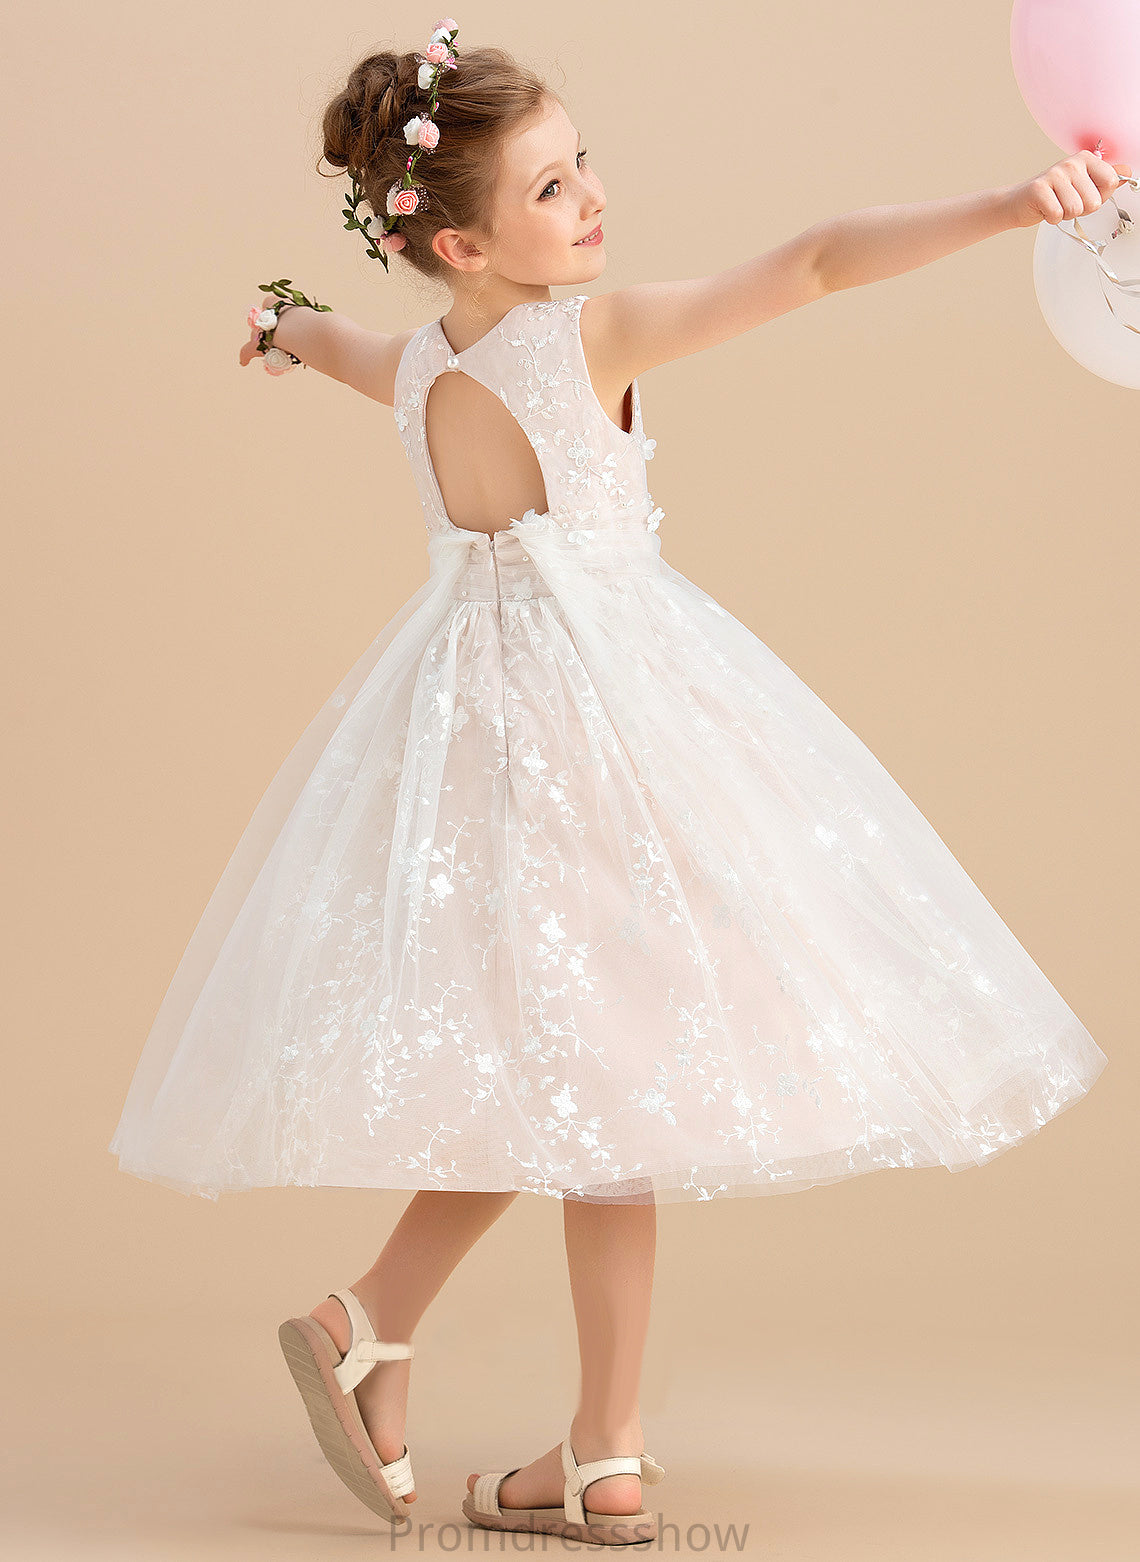 - Dress Flower Girl Dresses Tea-length With Sleeveless Beading/Flower(s) Girl Neck A-Line Tulle/Lace Flower Hannah Scoop